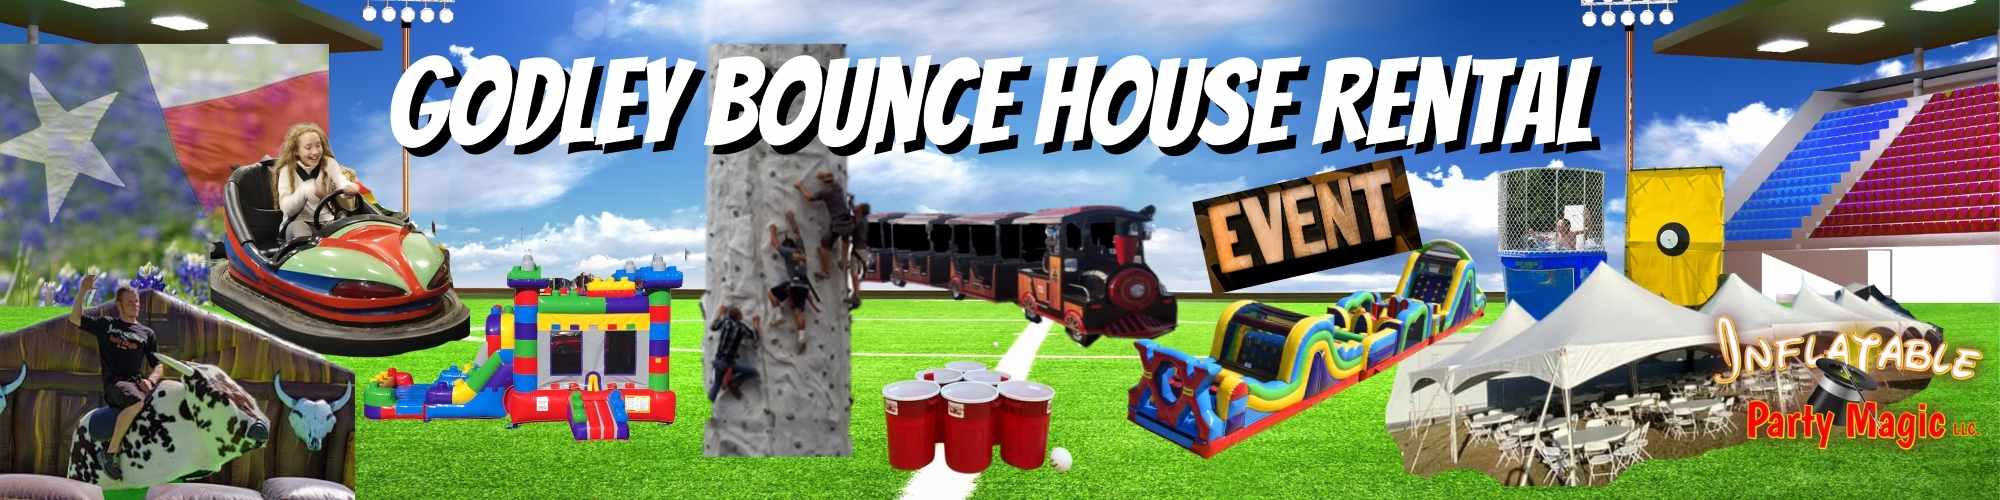 Godley Bounce House Rental